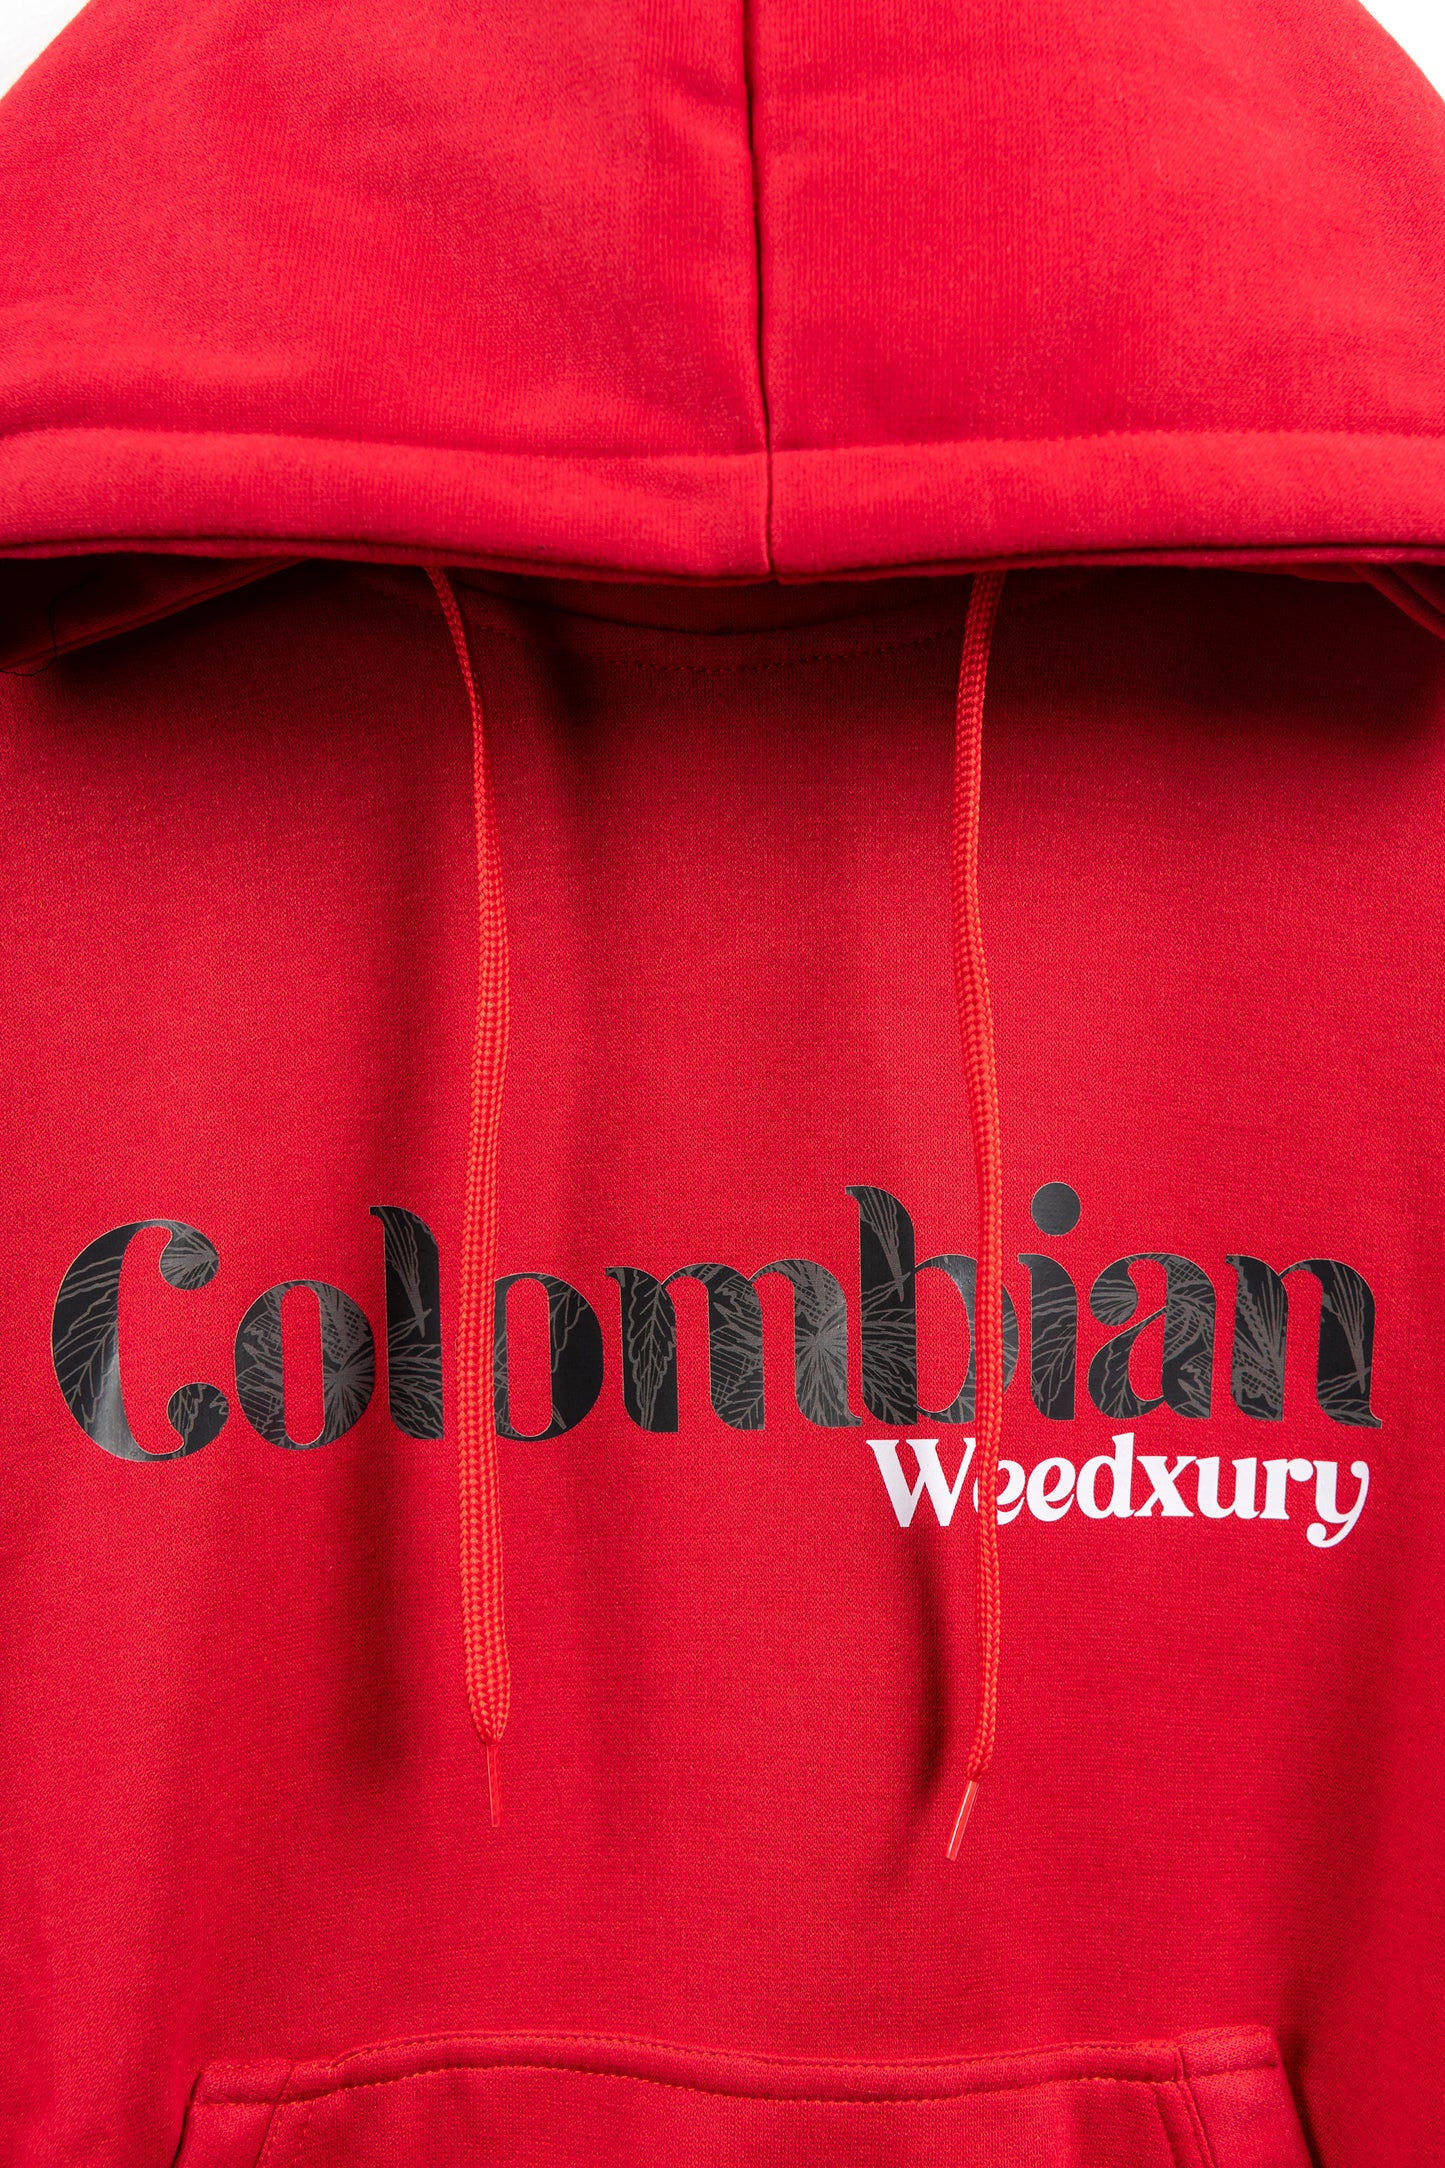 Colombian Weedxury Red Hoodie (Unisex)